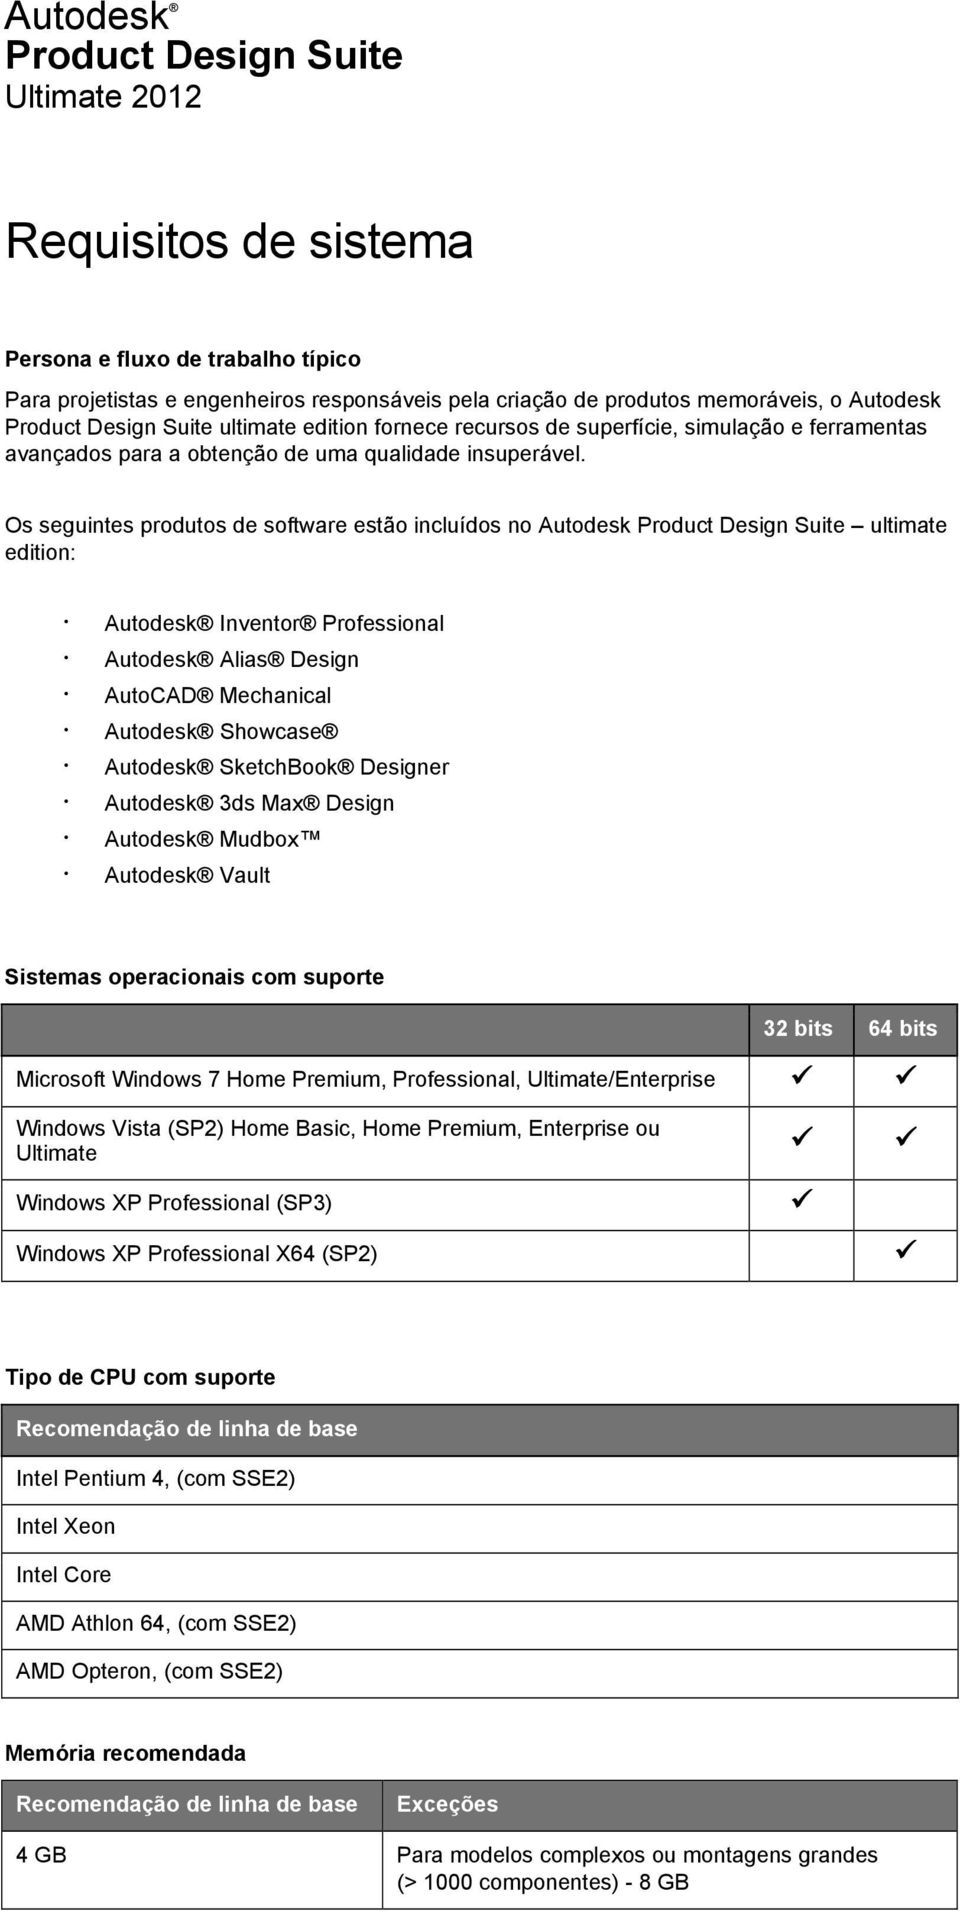 Os seguintes produtos de software estão incluídos no Autodesk Product Design Suite ultimate edition: Inventor Professional Alias Design AutoCAD Mechanical Showcase SketchBook Designer 3ds Max Design